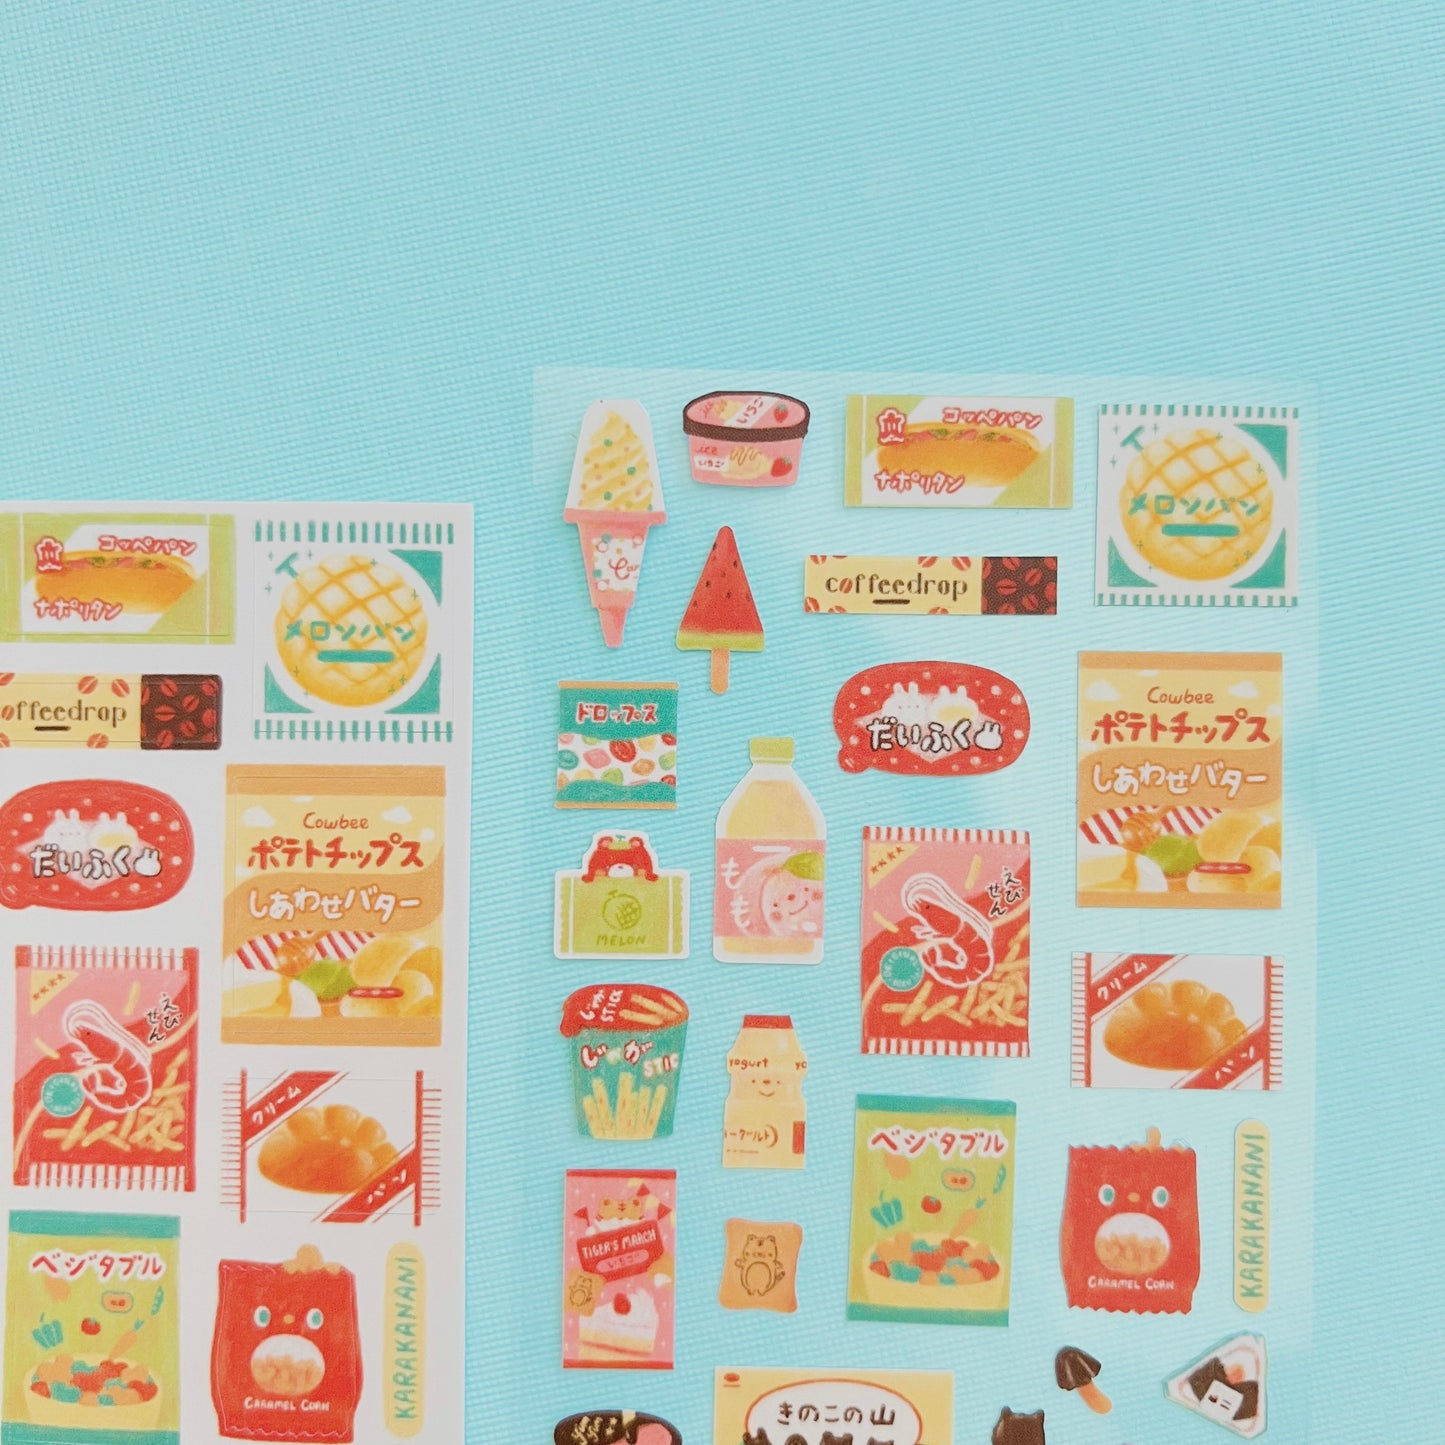 Favorite Snacks Journaling Sticker Sheet